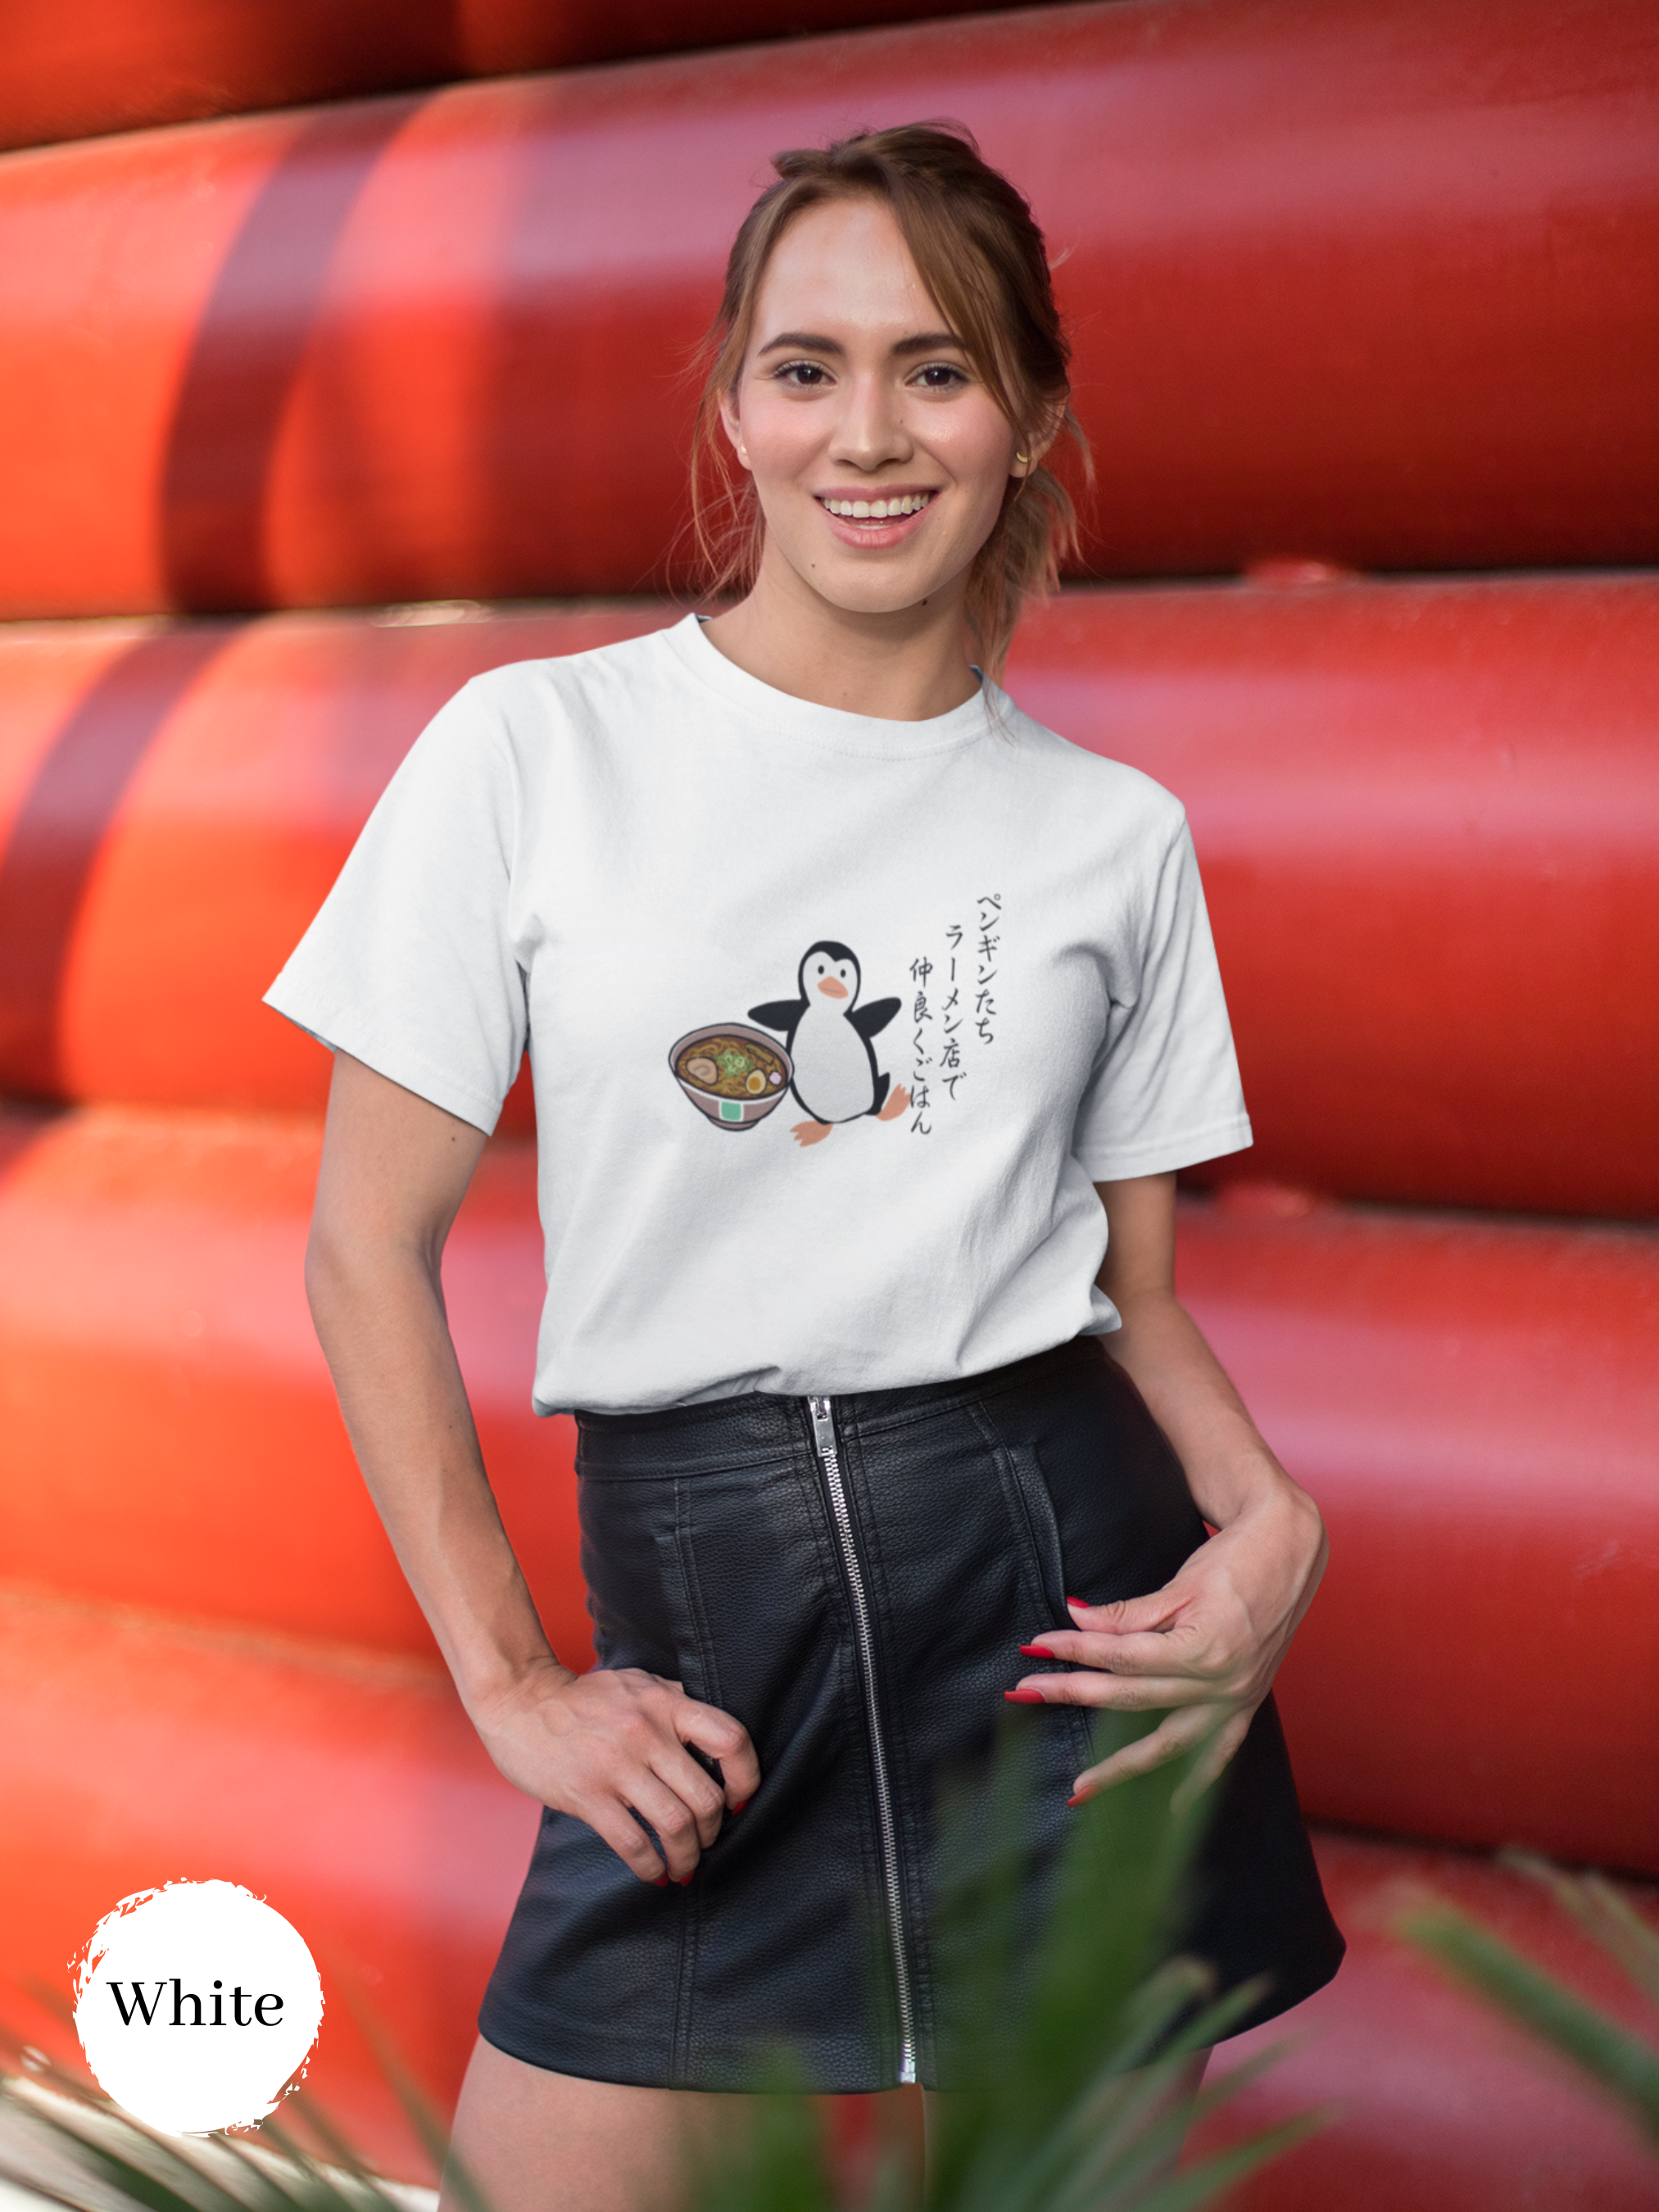 Ramen T-Shirt with Haiku Art: Penguin Friends Dining Together at Japanese Ramen Shop Japanese Asian Text Tee